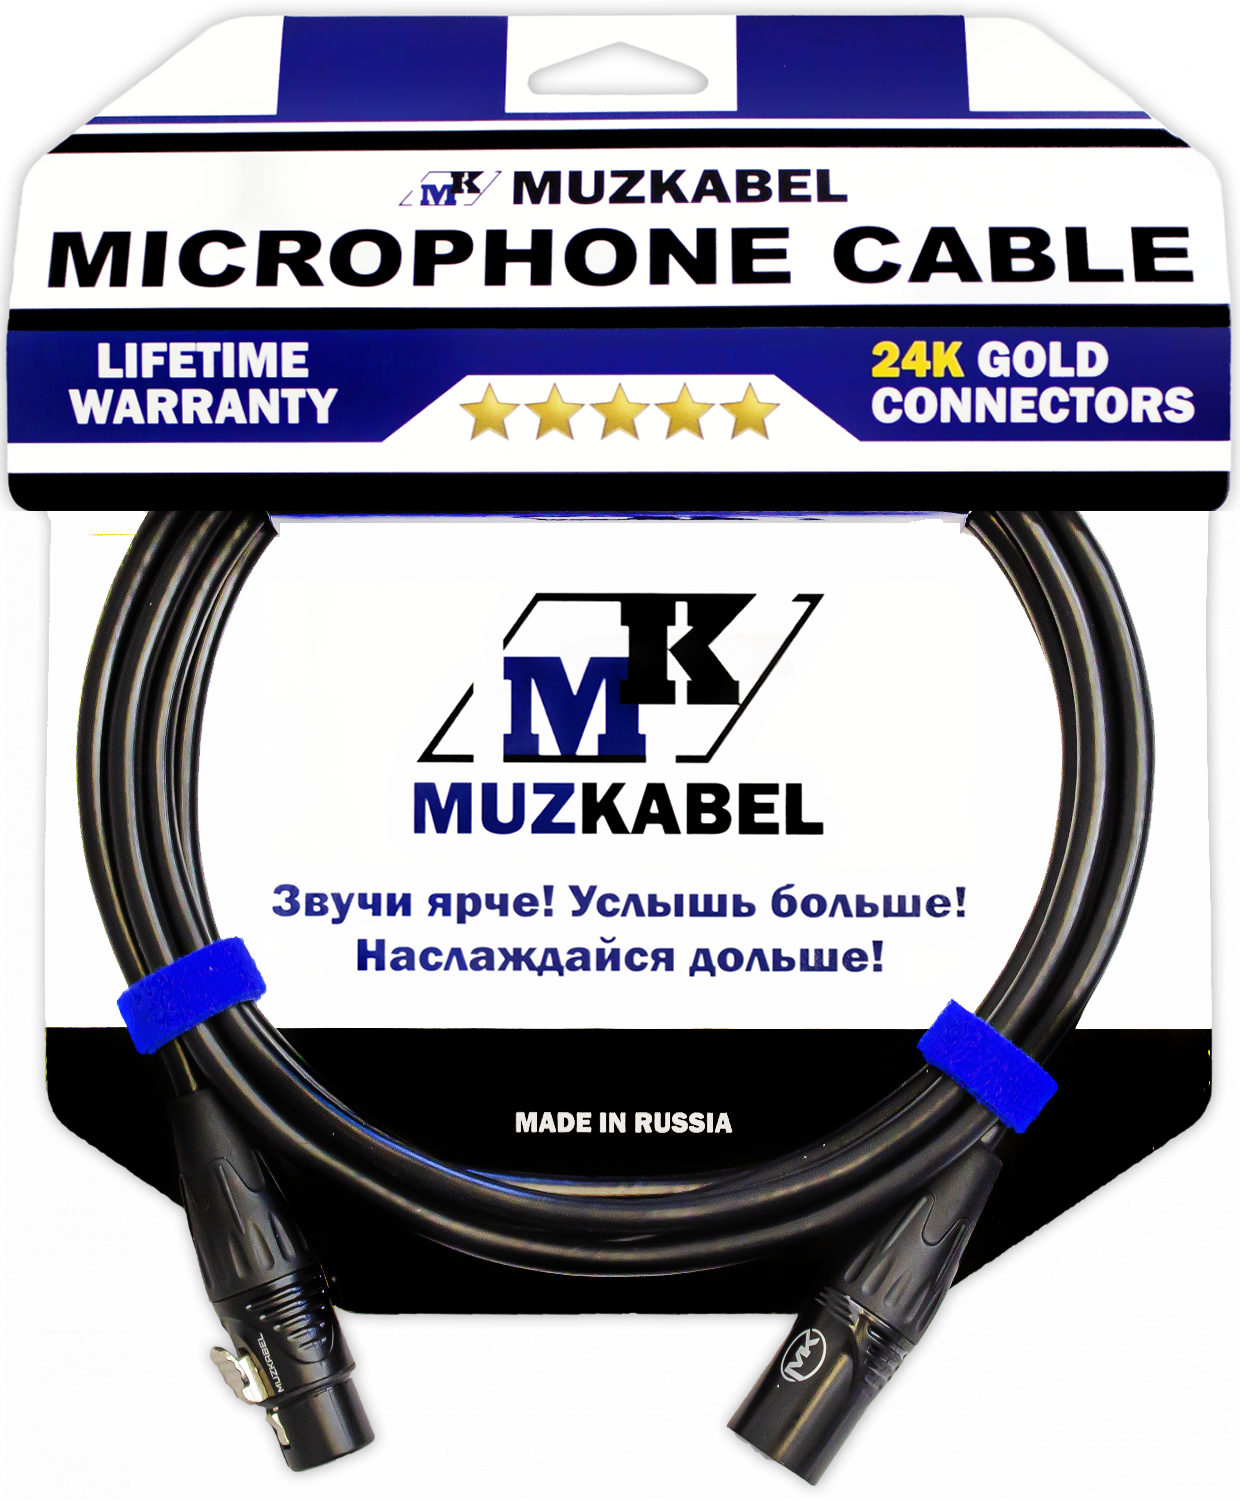 Микрофонный кабель MUZKABEL CBXMK3 - 15 метров, XLR - XLR